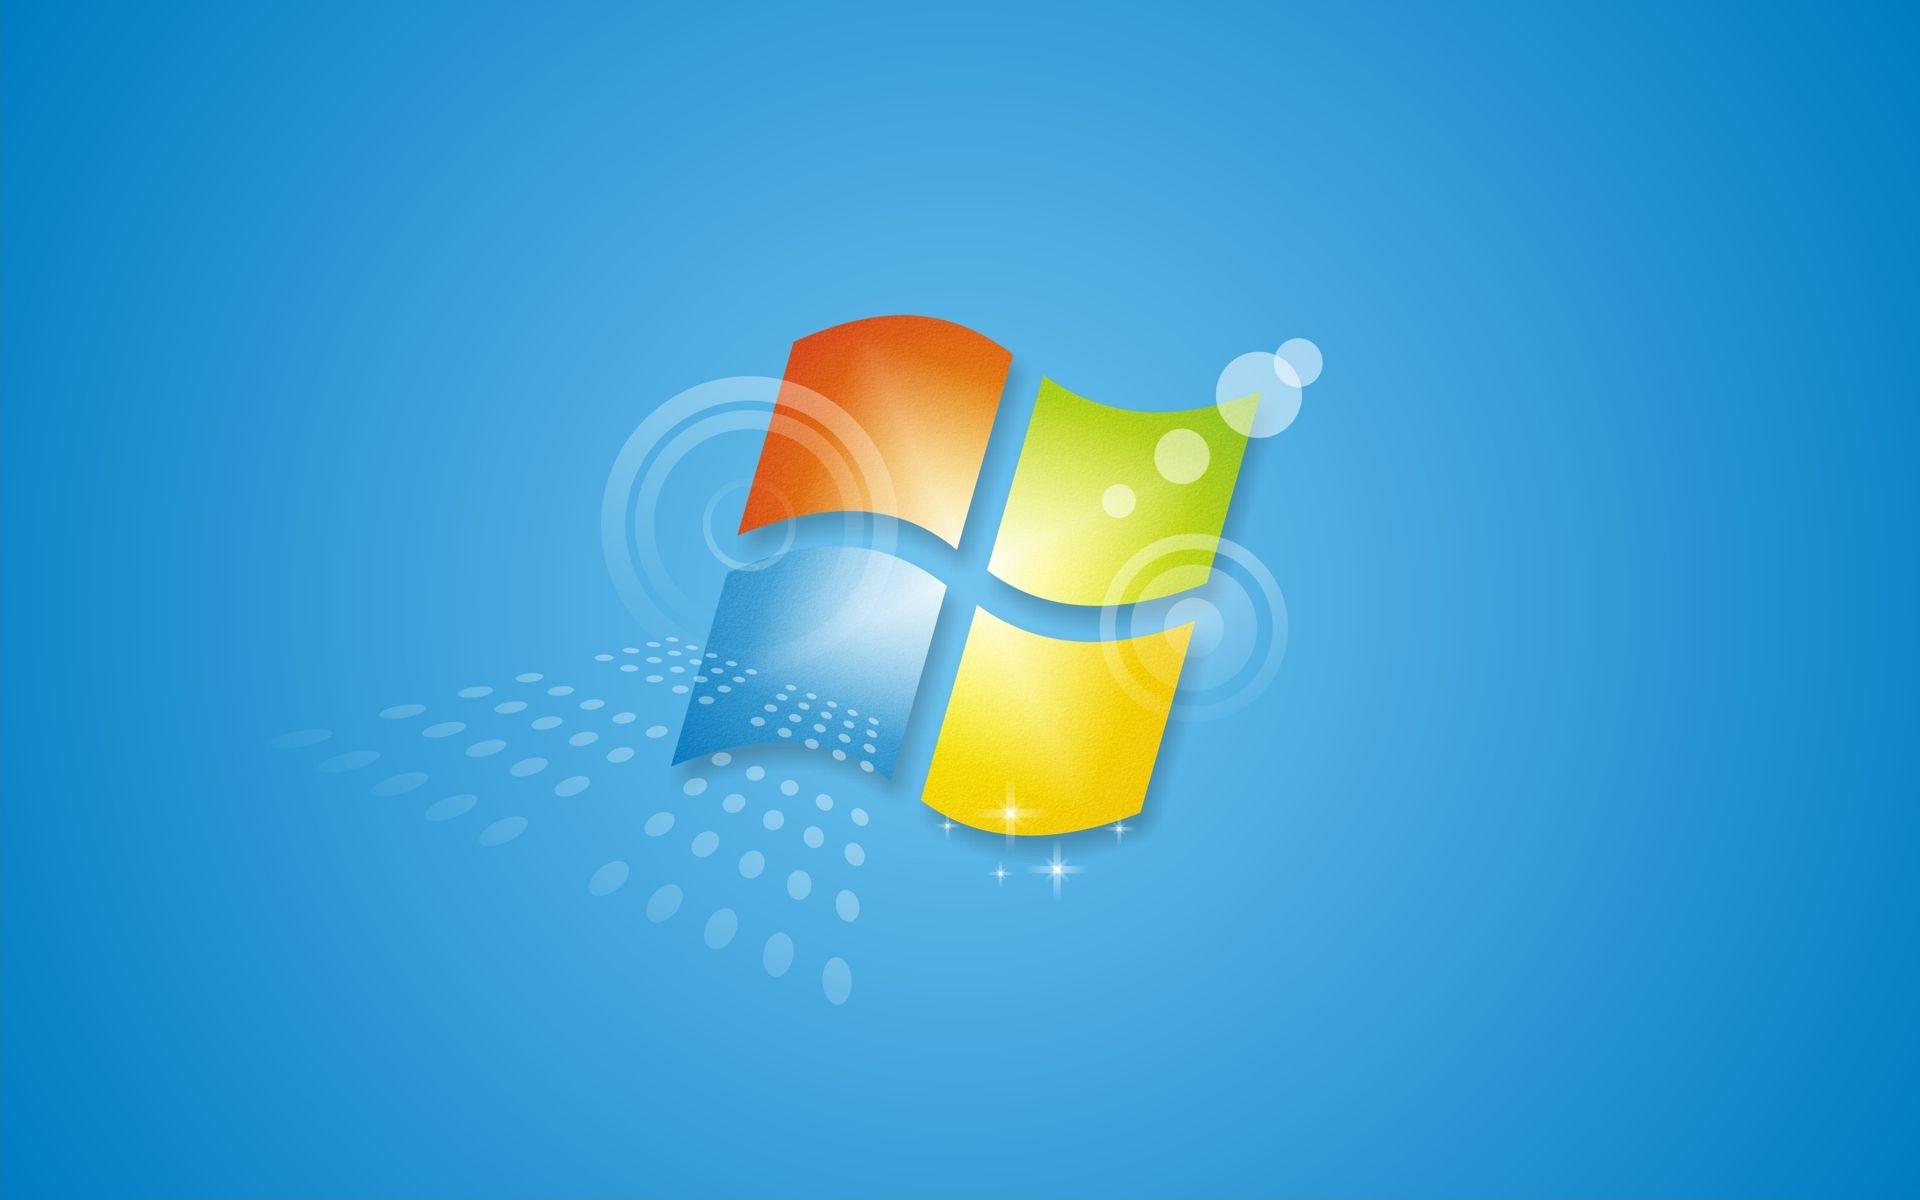 Fin de Windows 7 : Microsoft diffuse son alerte